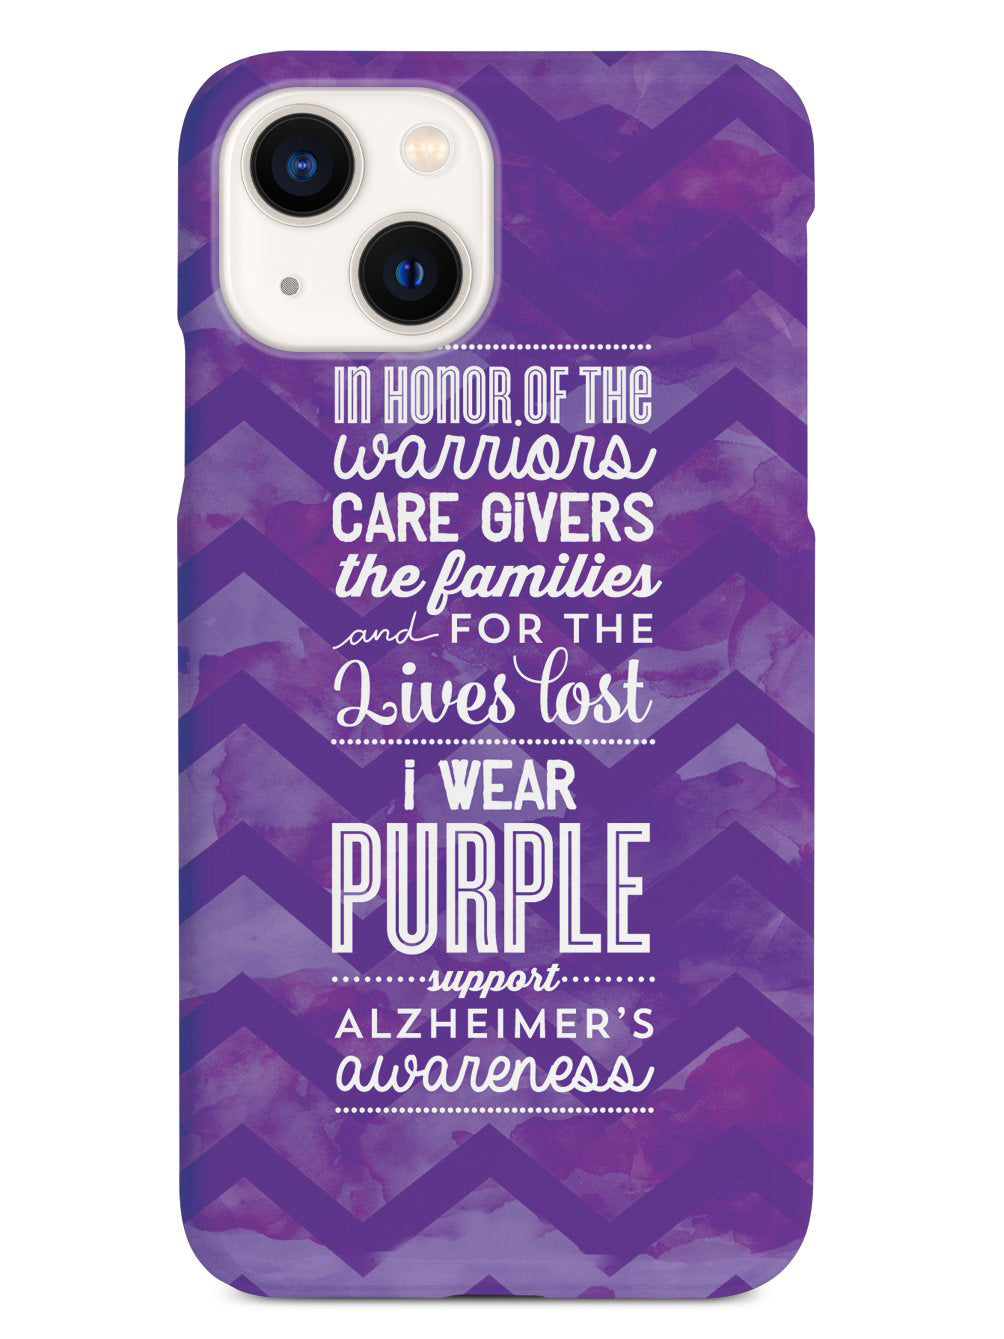 I Wear Purple - Alzheimer's Awareness Support Case